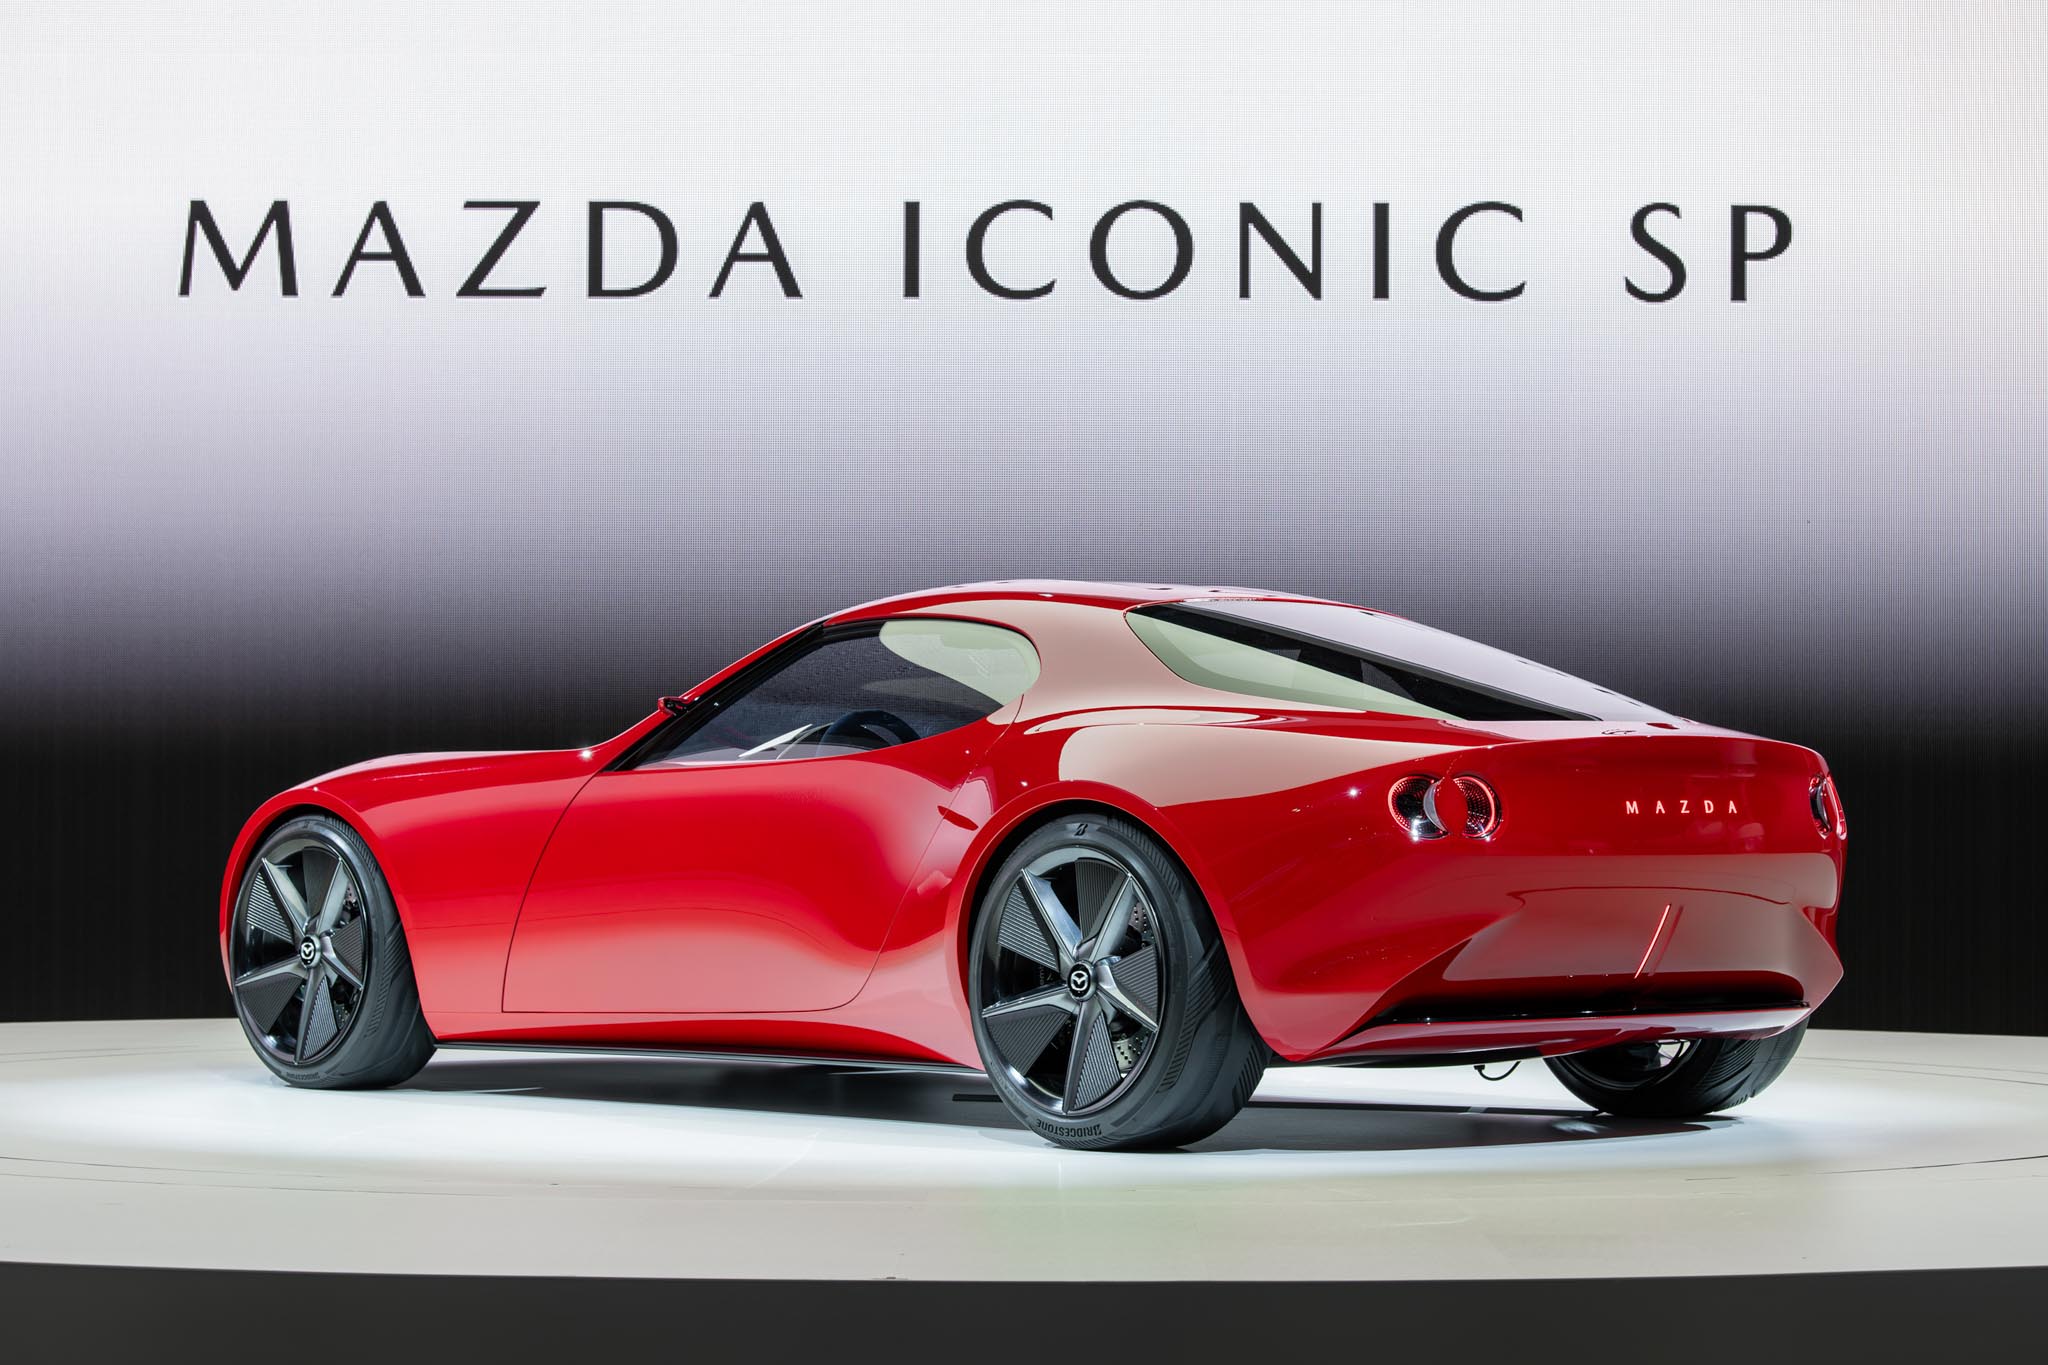 Mazda Iconic SP